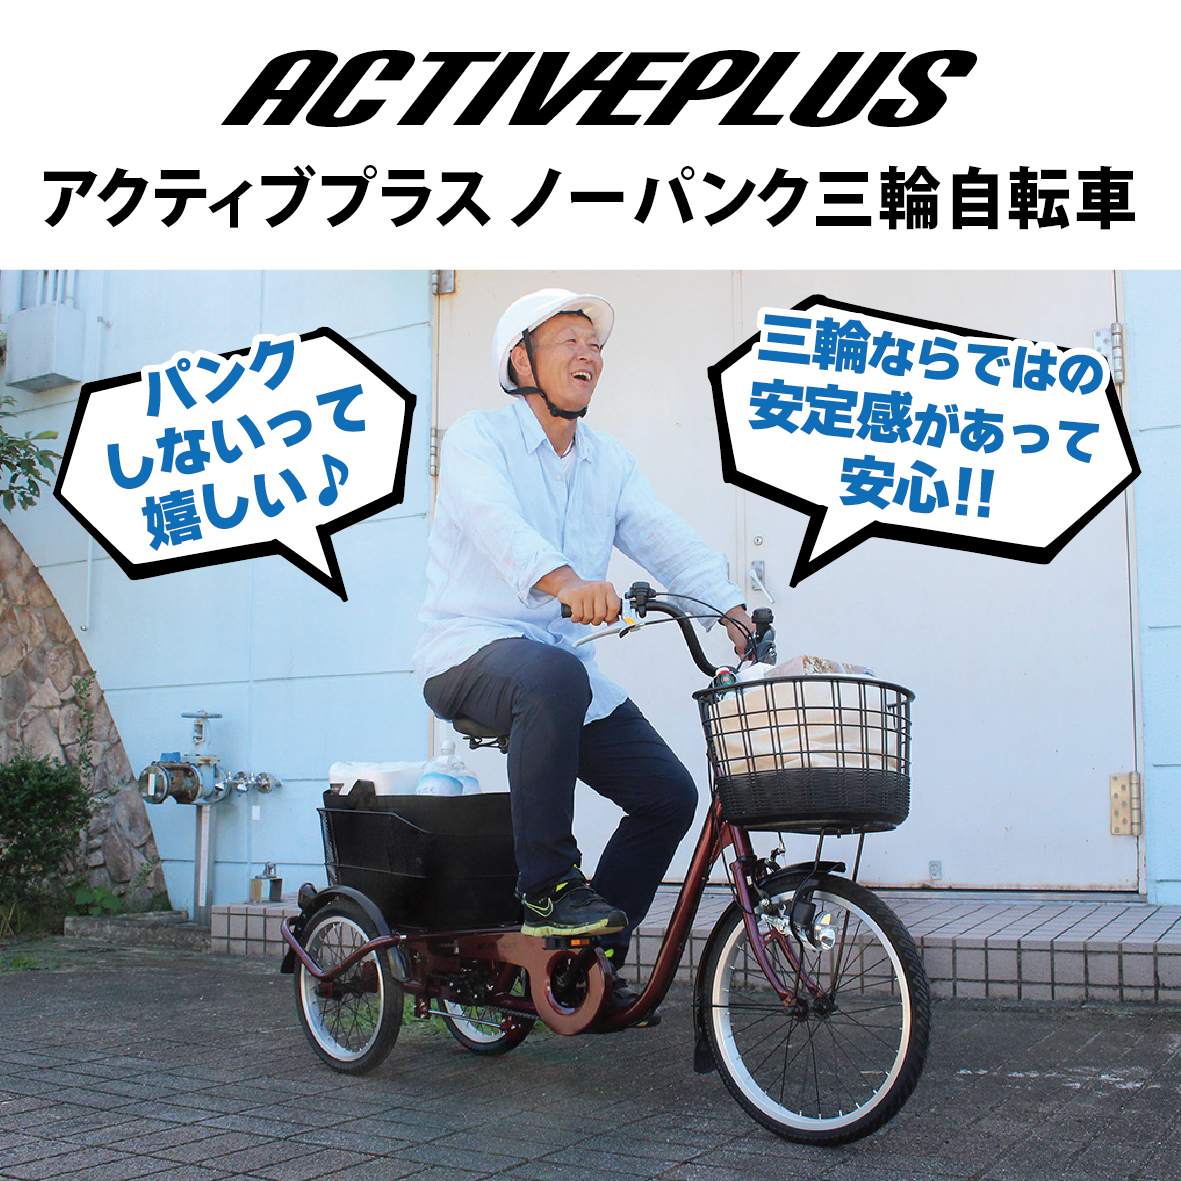 ACTIVEPLUS ノーパンク三輪自転車